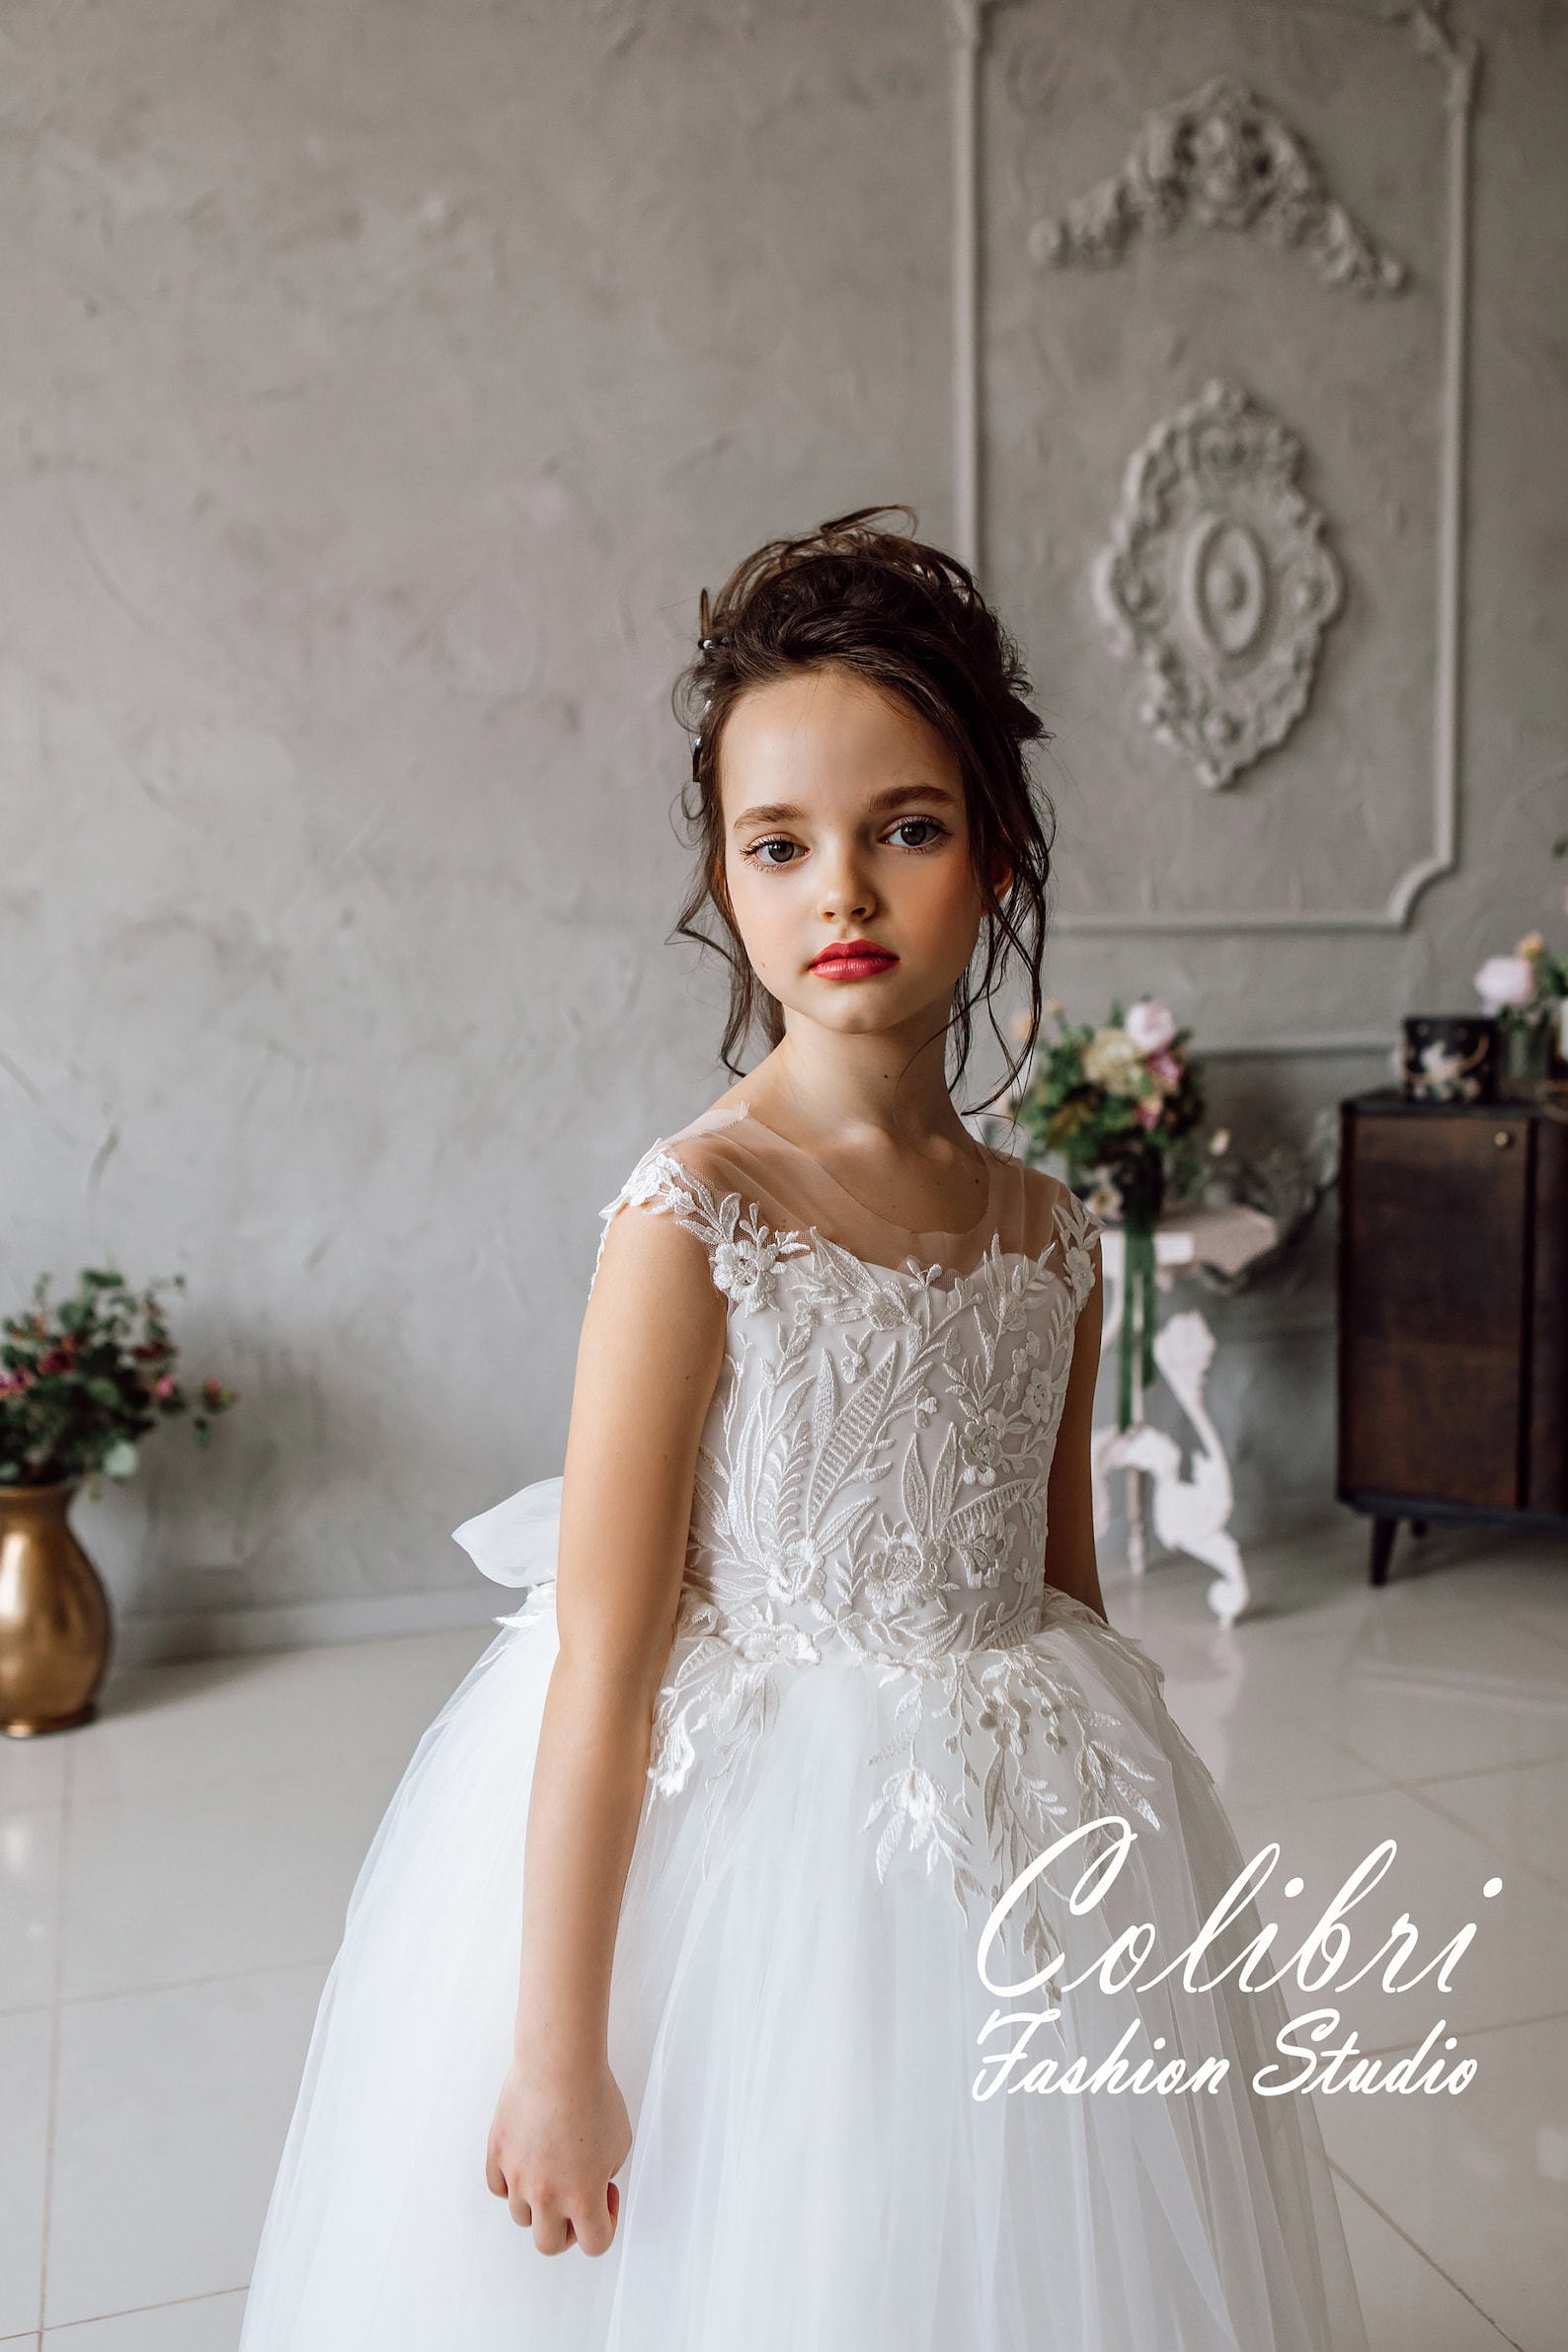 Wedding Girl Dress First Communion Dress Tulle Flower Girl - Etsy